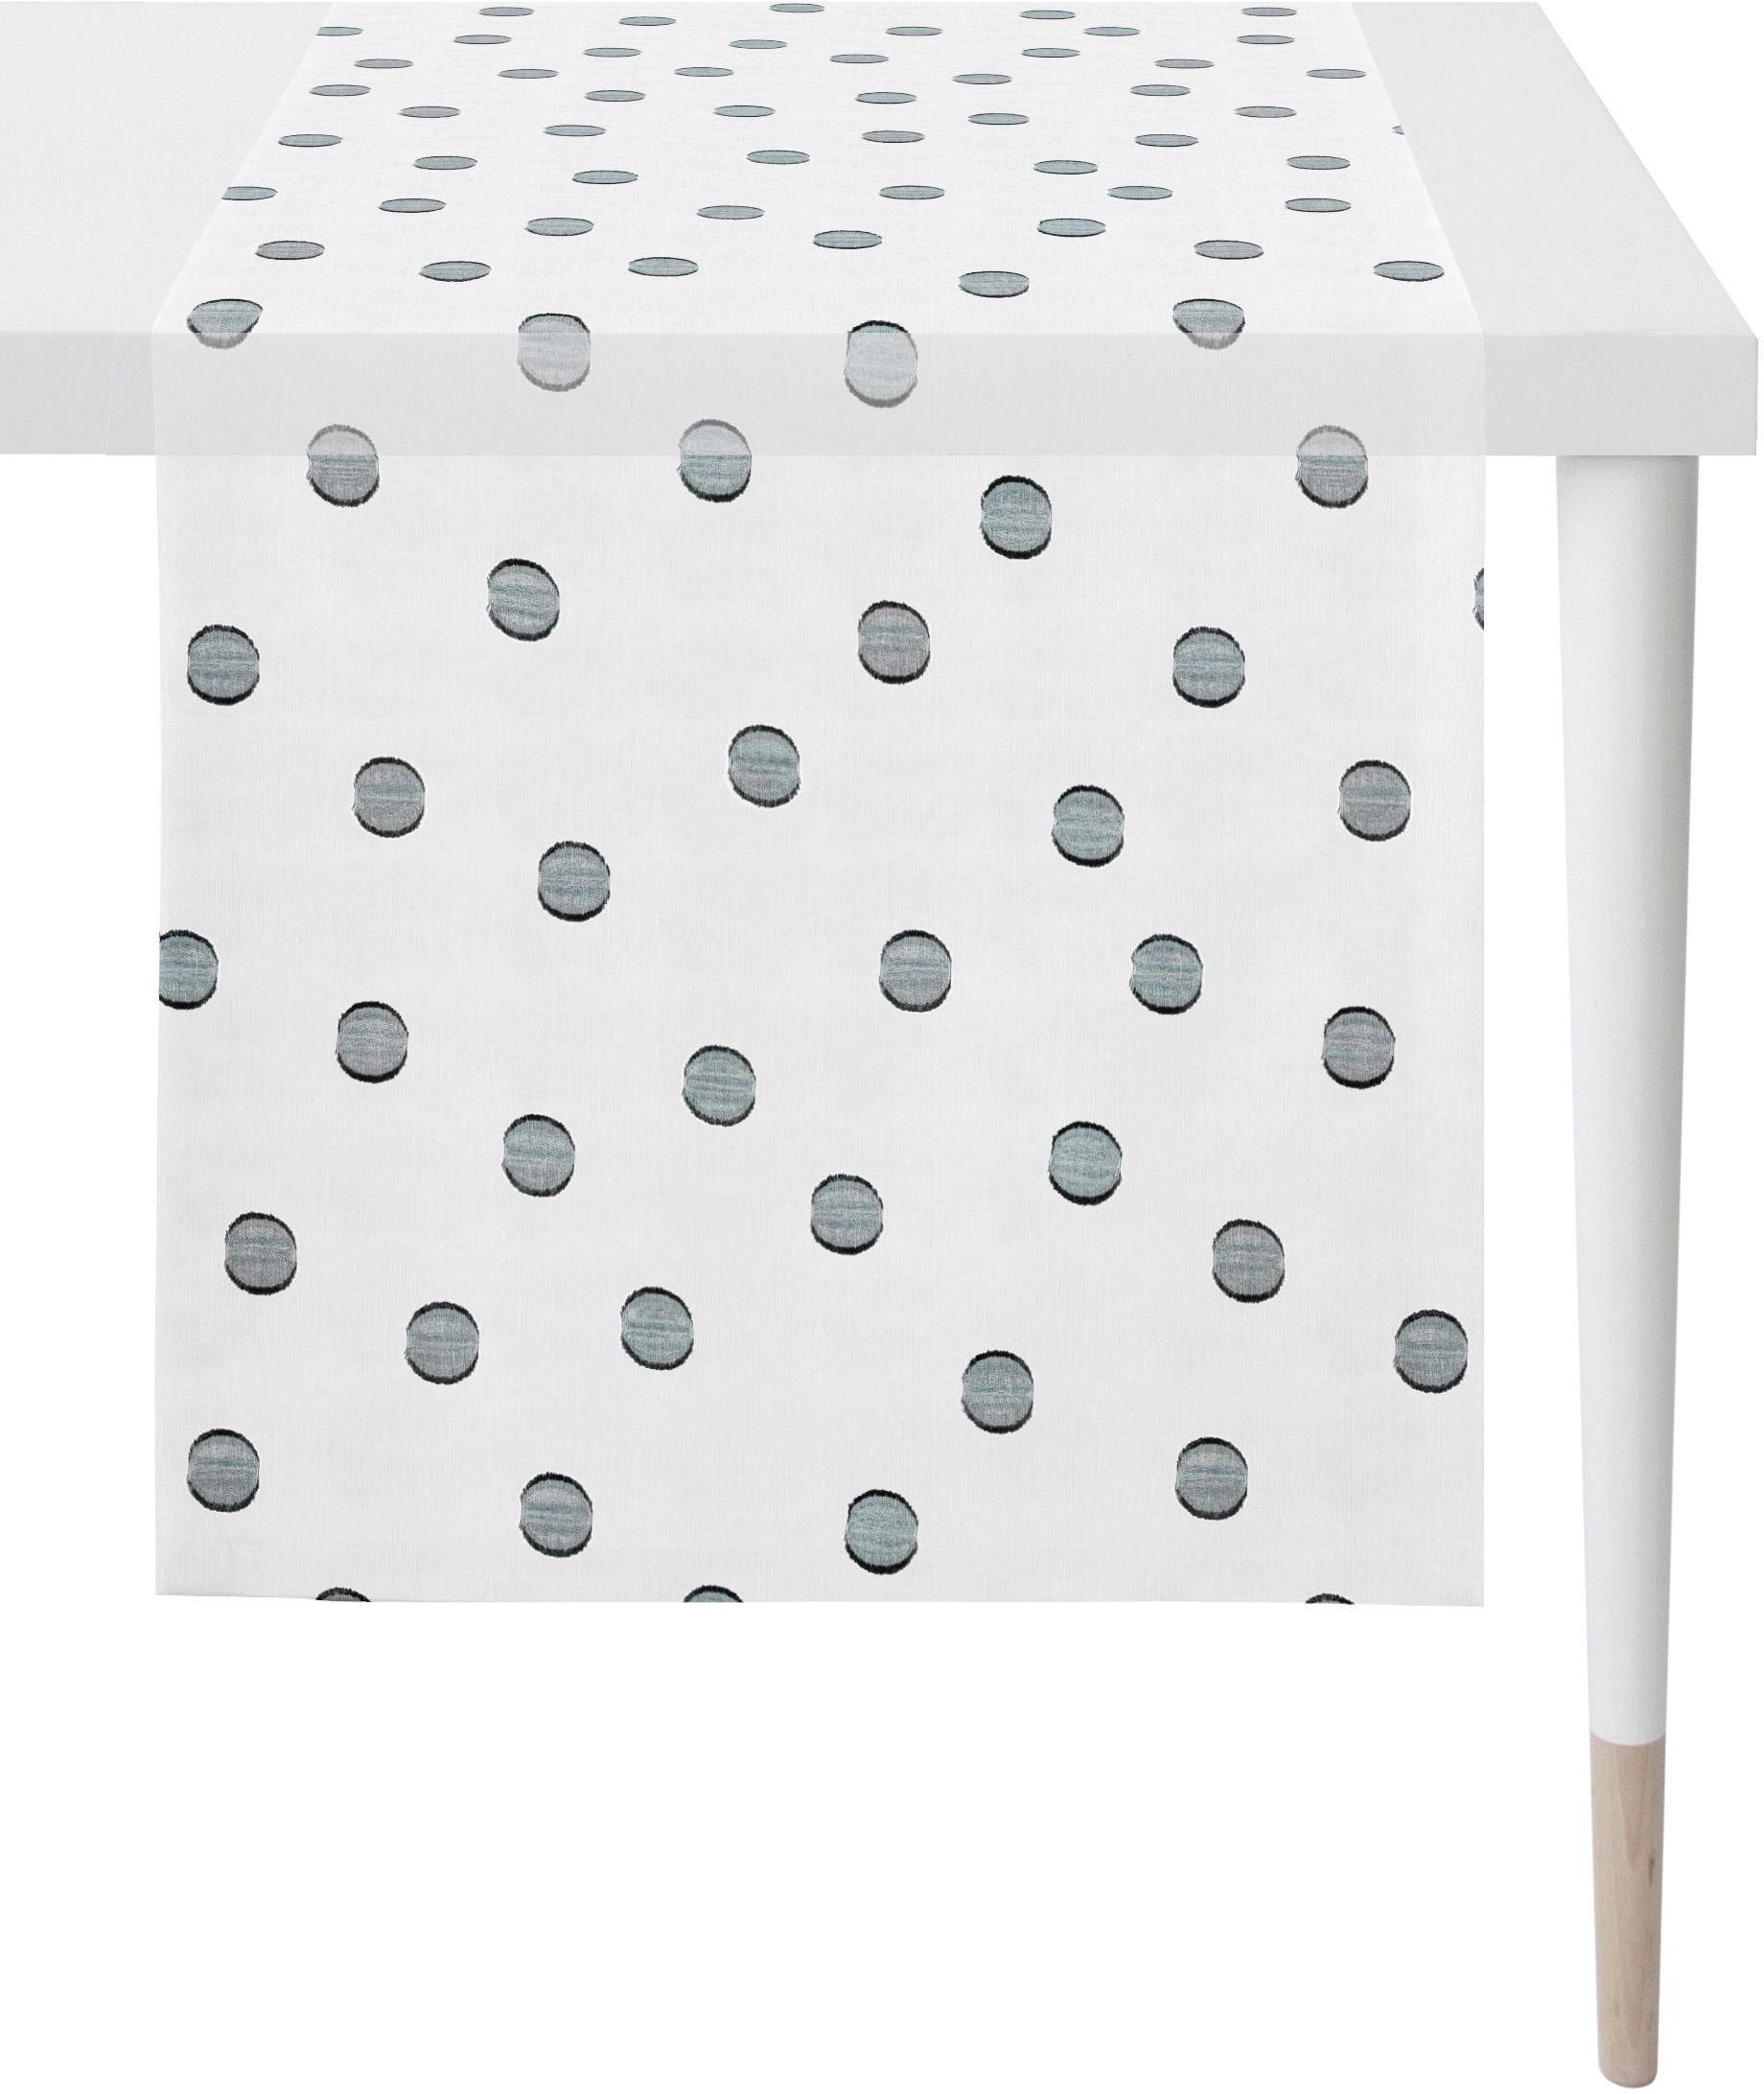 Style transparent APELT Sevilla - Loft - Tischläufer weiß/anthrazit (1-tlg), Scherli